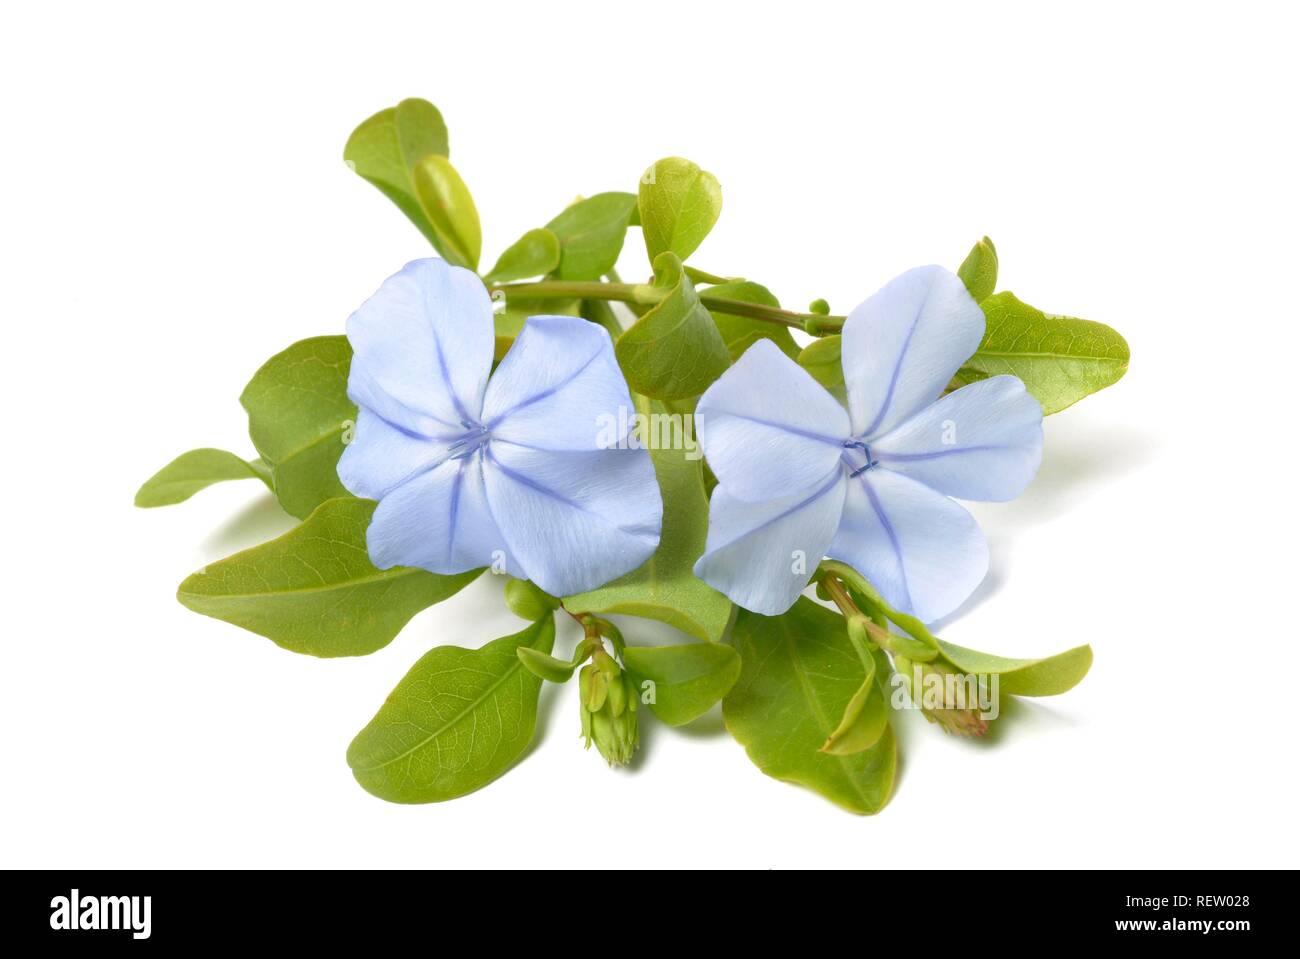 Plumbago bleu (Plumbago capensis), plante médicinale Banque D'Images